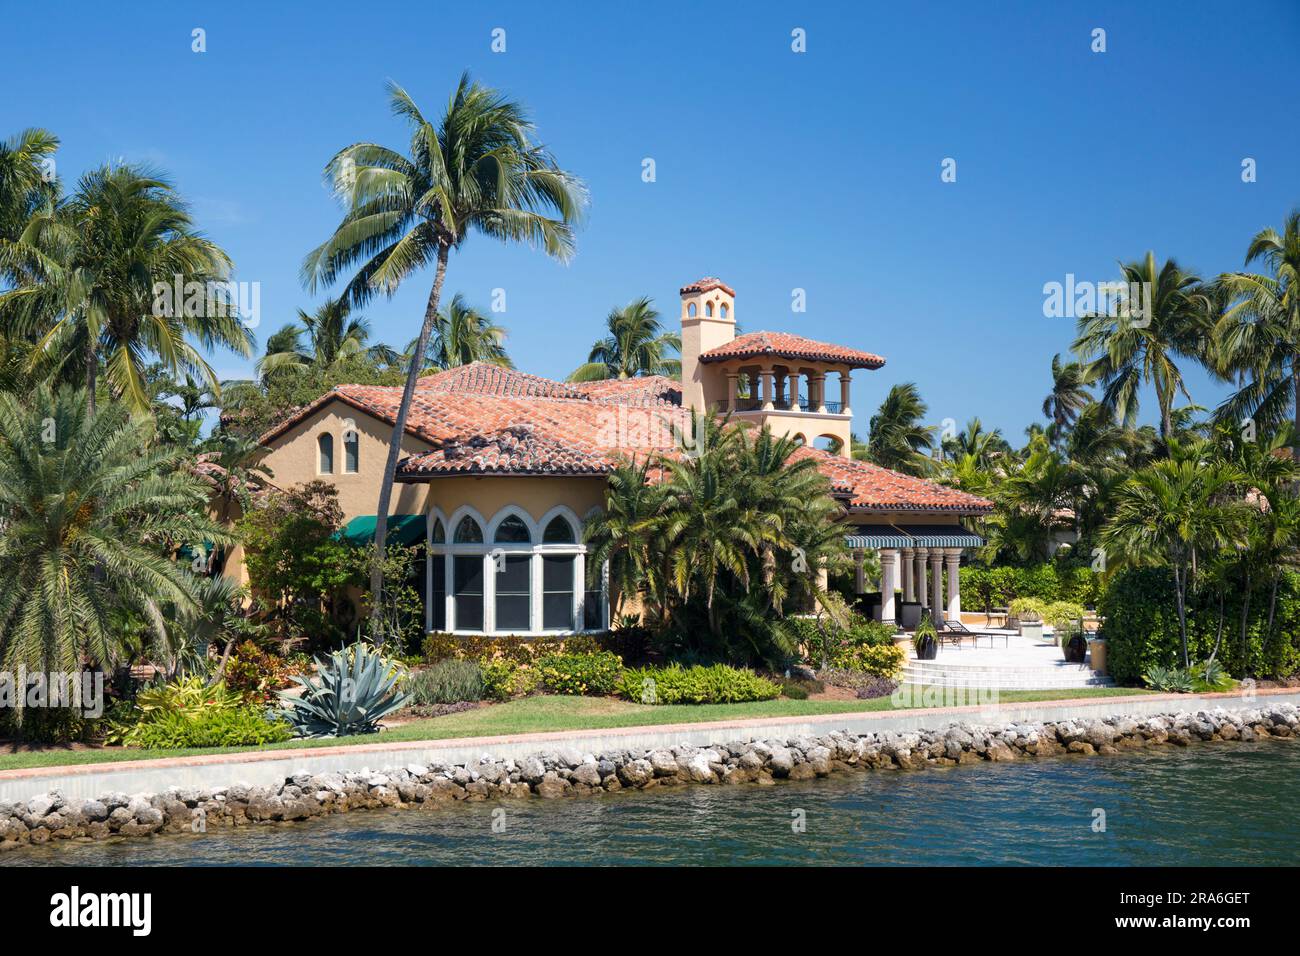 Fort Lauderdale, Floride, États-Unis. Luxueuse demeure en bord de mer surplombant la New River dans le quartier de Las Olas Isles. Banque D'Images